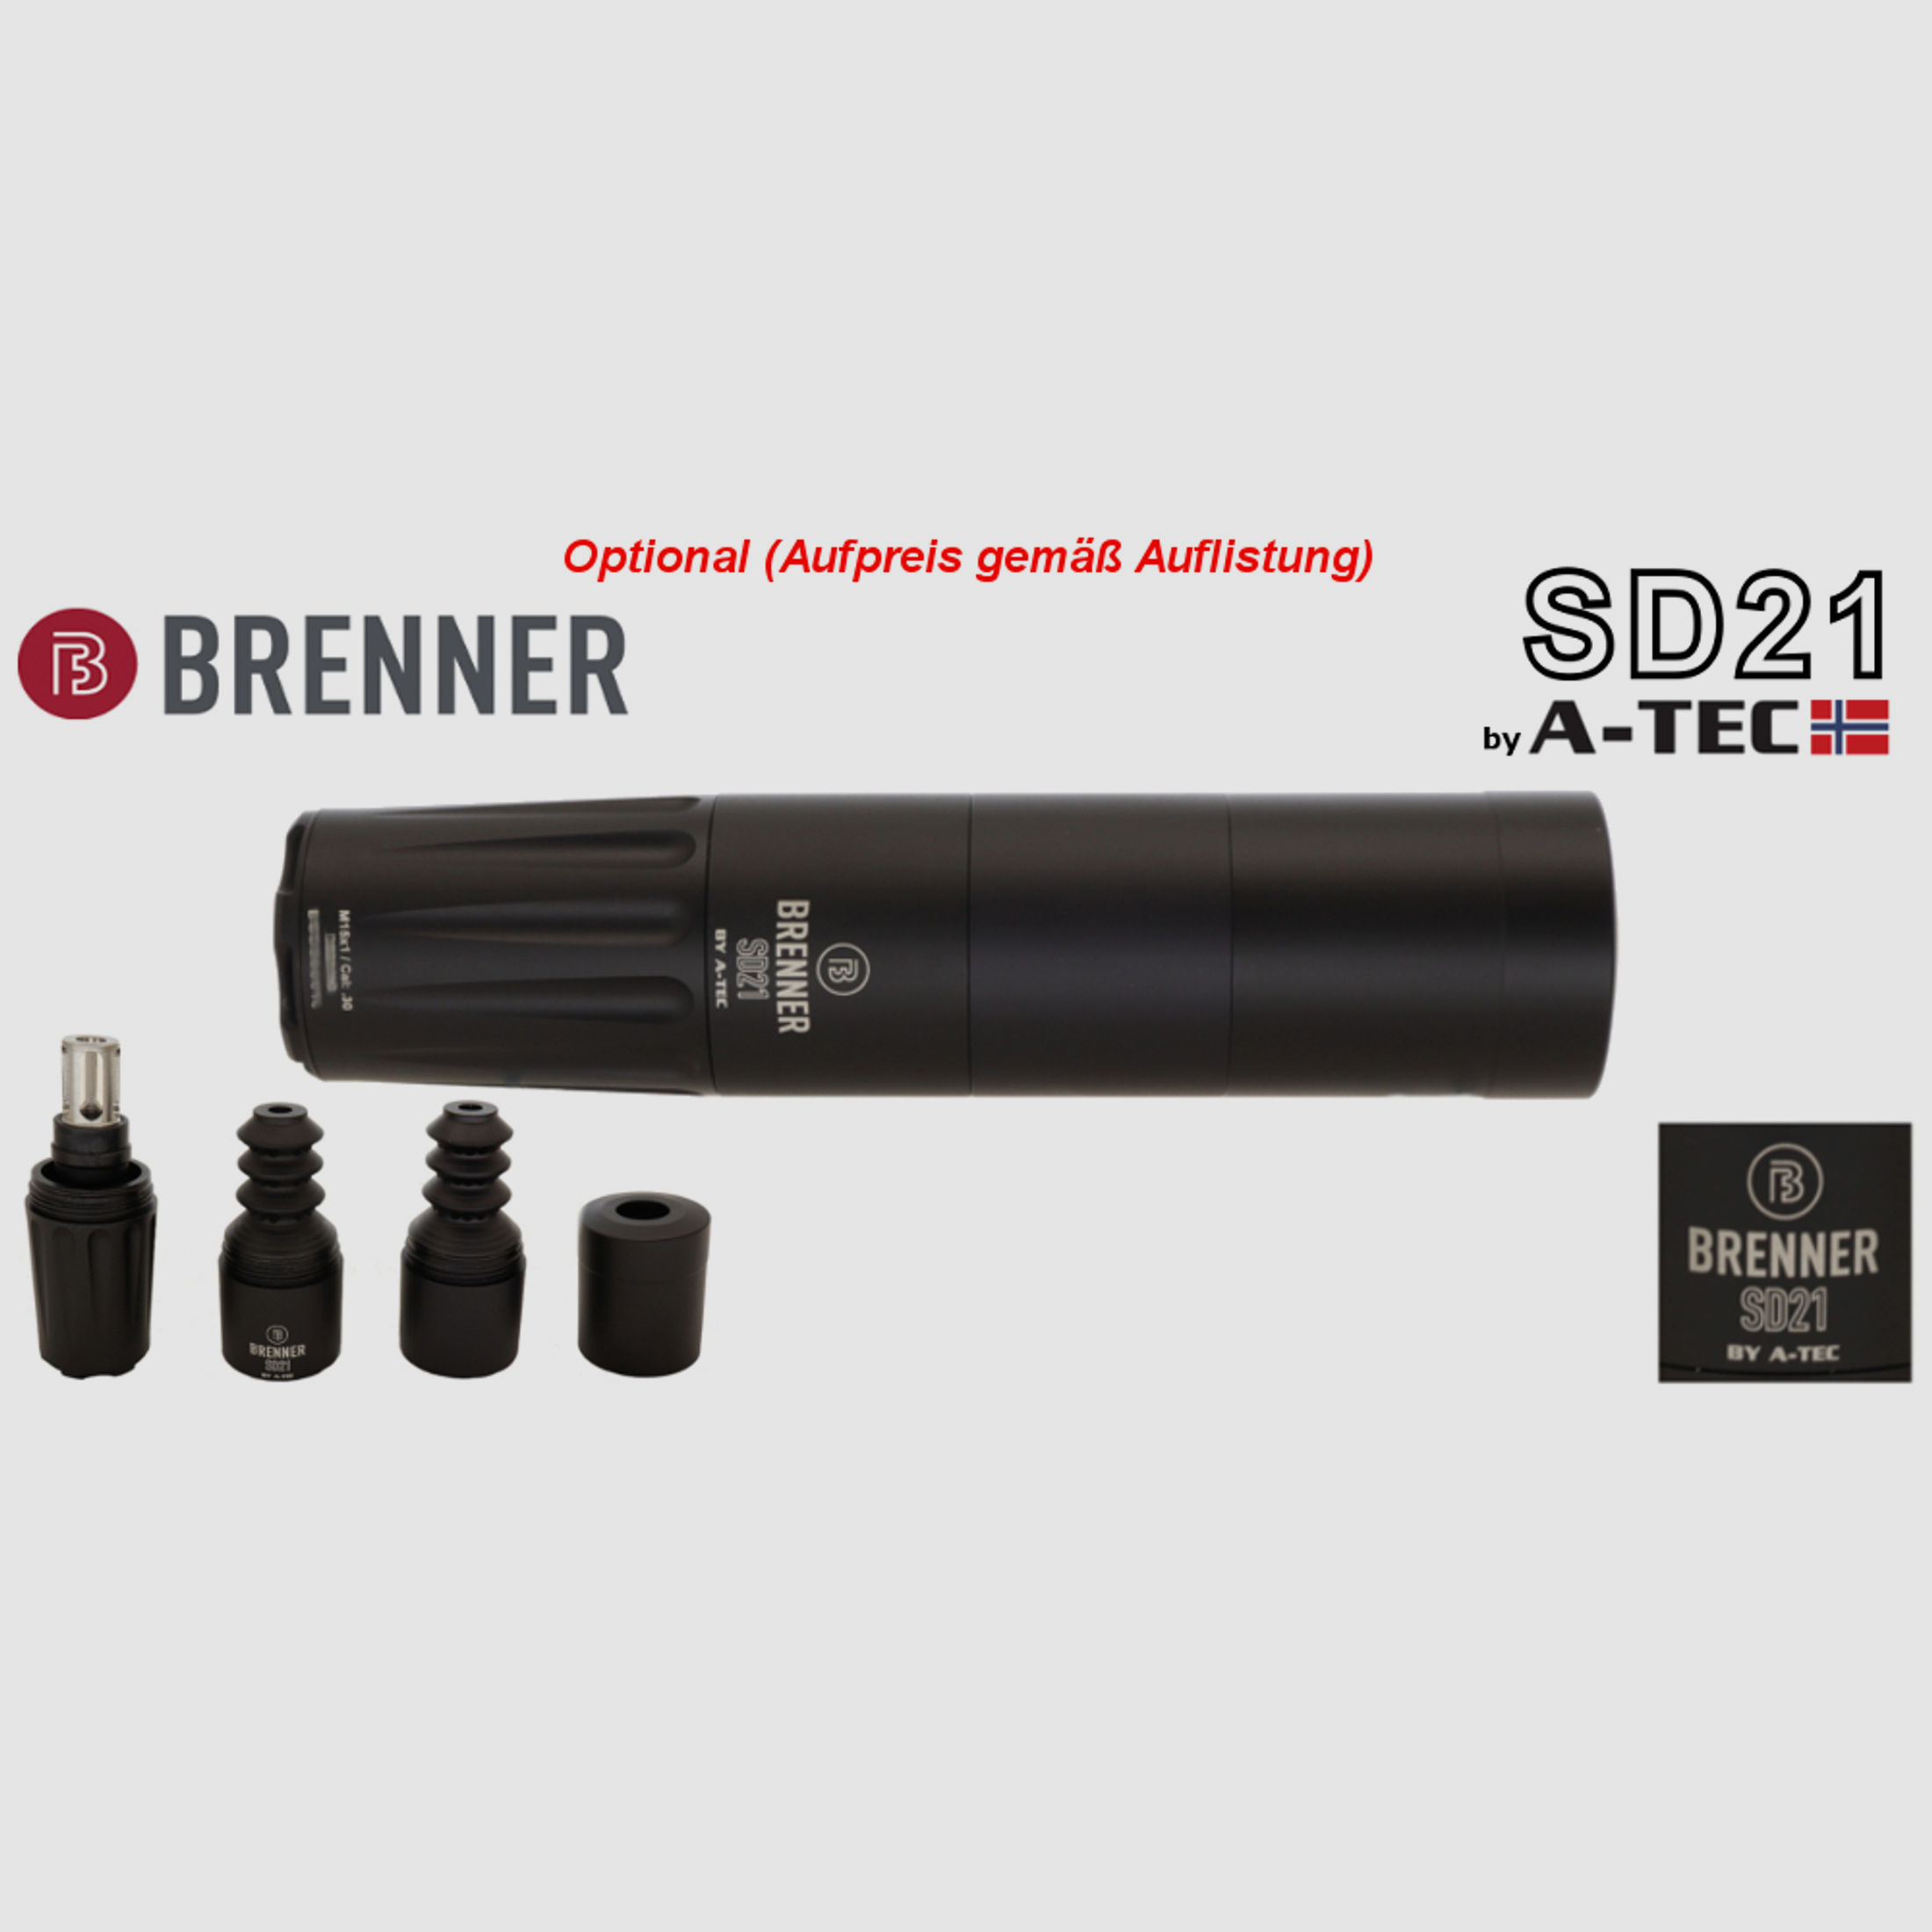  Bergara   B14 B&H Prohunter Flex LINKS Lochschaft ZF Hawke 3-12x56 fertig montiert / Optional: Brenner Schalldämpfer